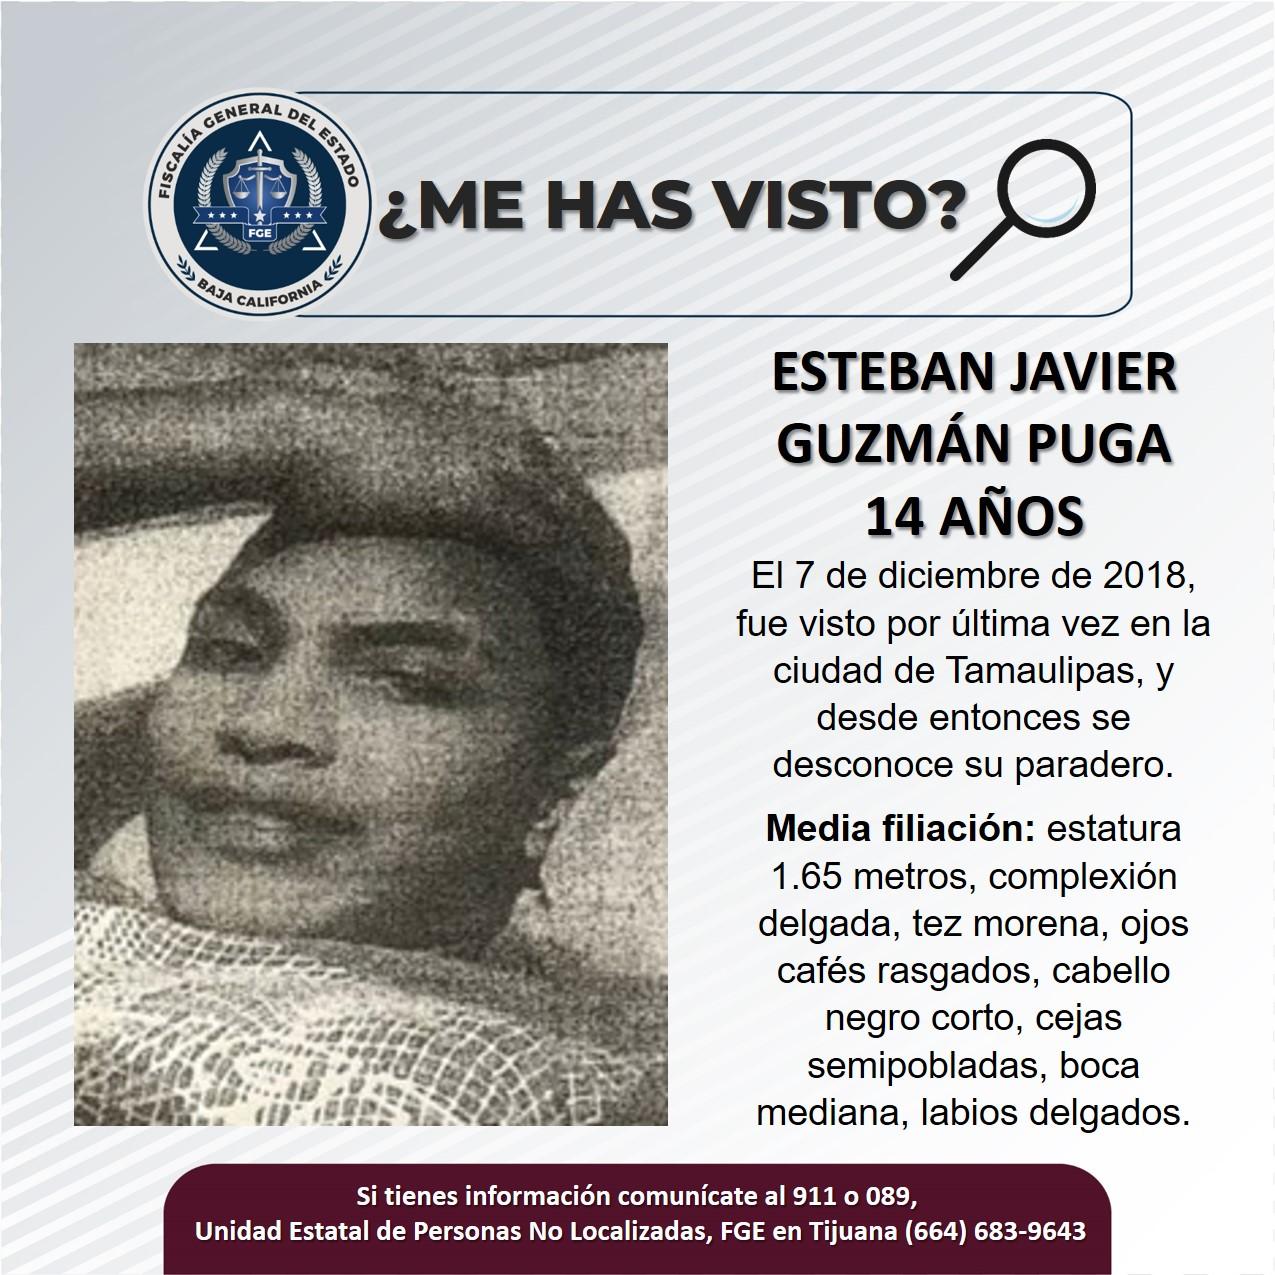 Servicio social: Se busca a Esteban Javier Guzmán Puga de 14 años de edad